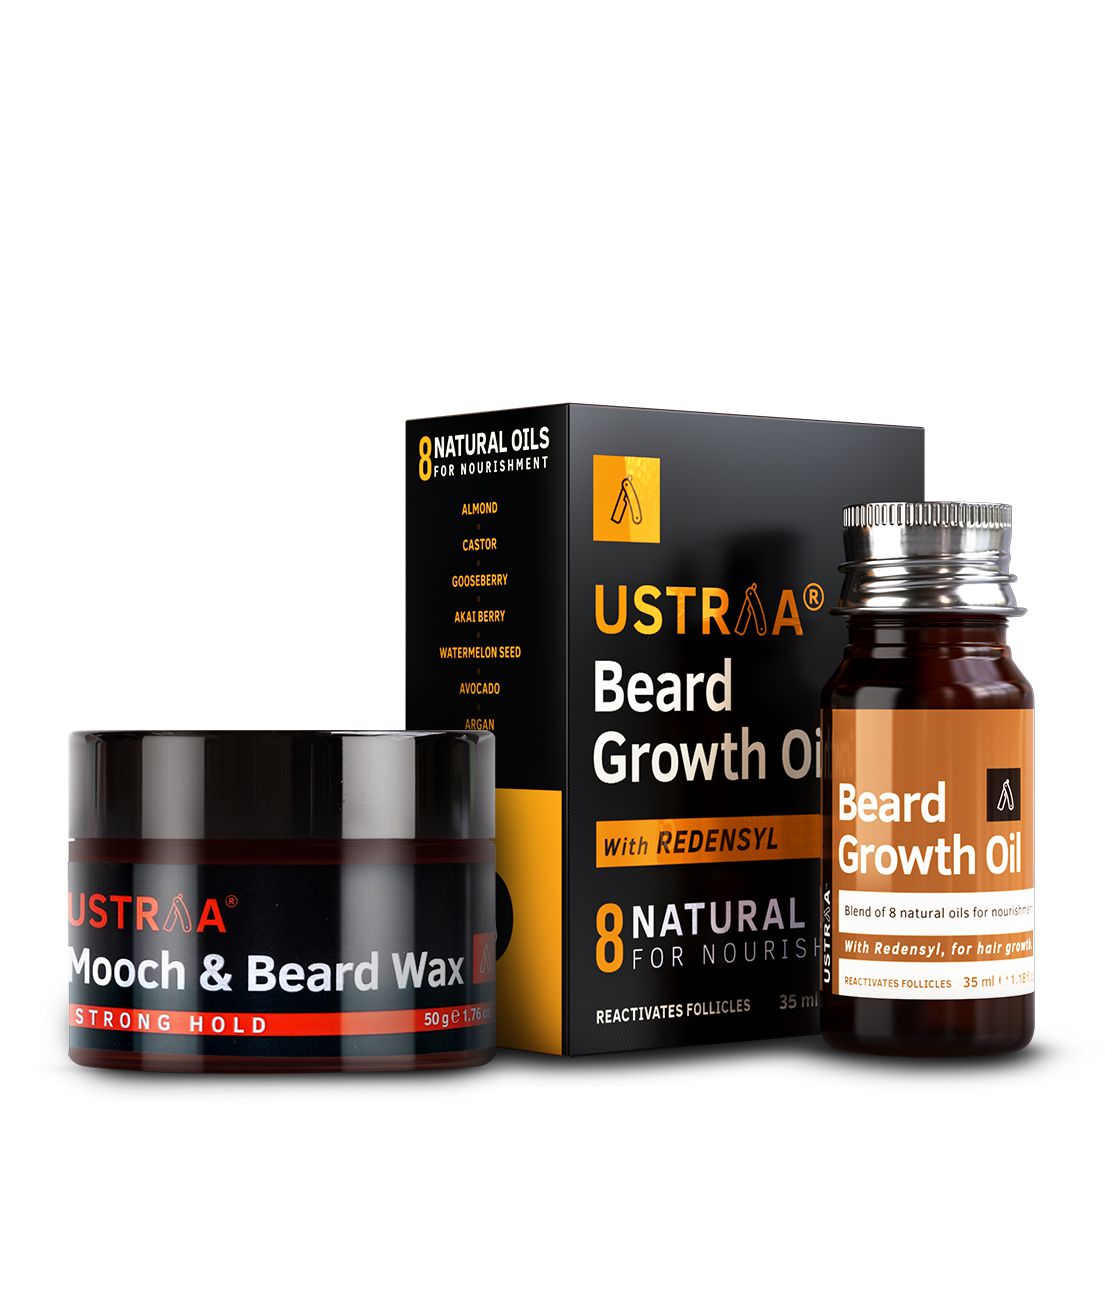 Ustraa Beard Growth Oil - 35ml and Ustraa Beard & Mooch Wax - 50g